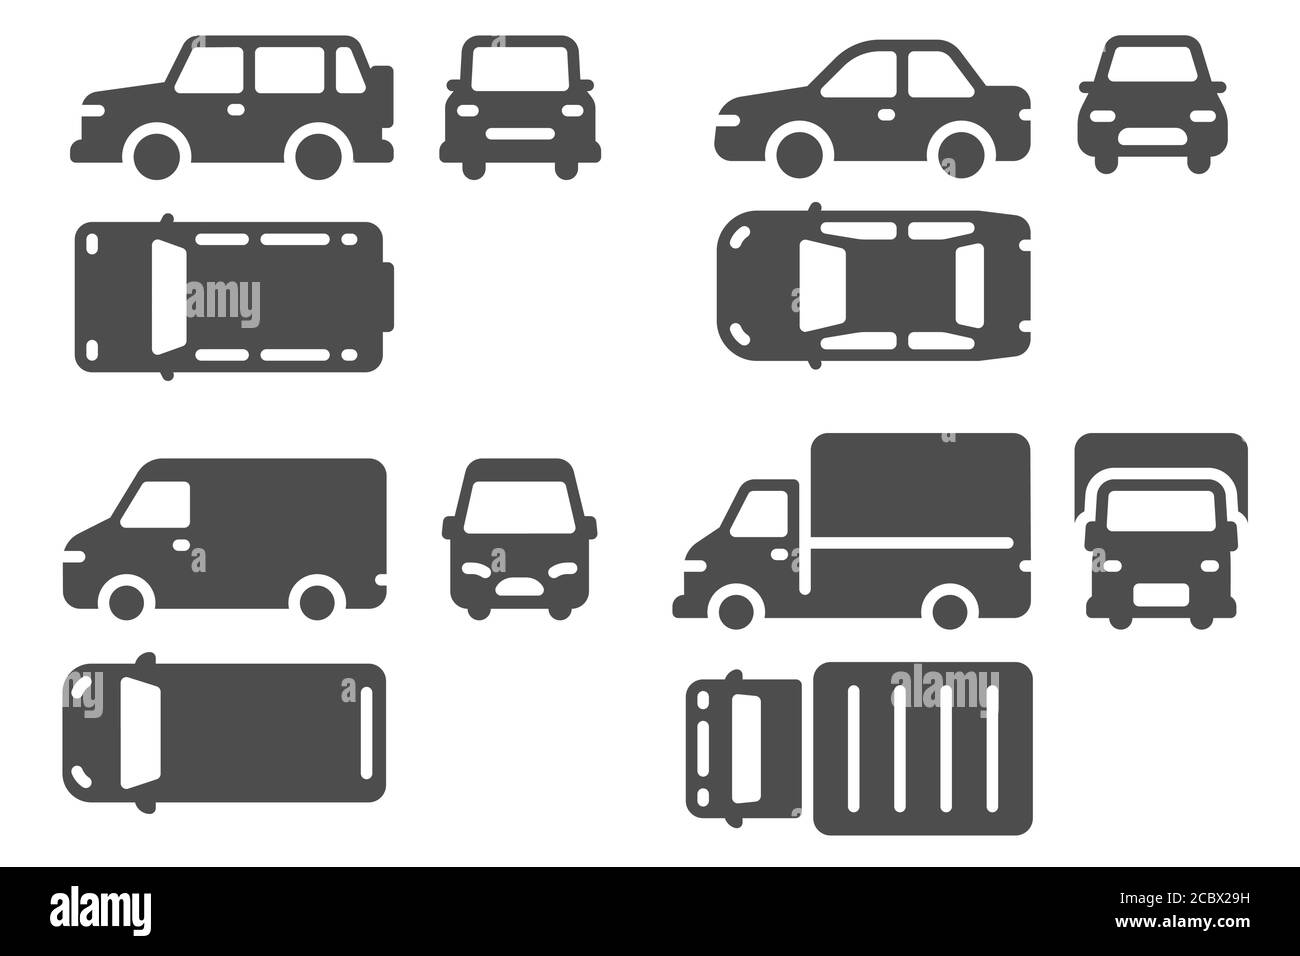 Ansicht von oben und von vorne. Fahrzeugprojektion, suv, Minibus und LKW Auto-Symbole für Web, ui-Design skizzieren Transport-Vektor-Set Stock Vektor